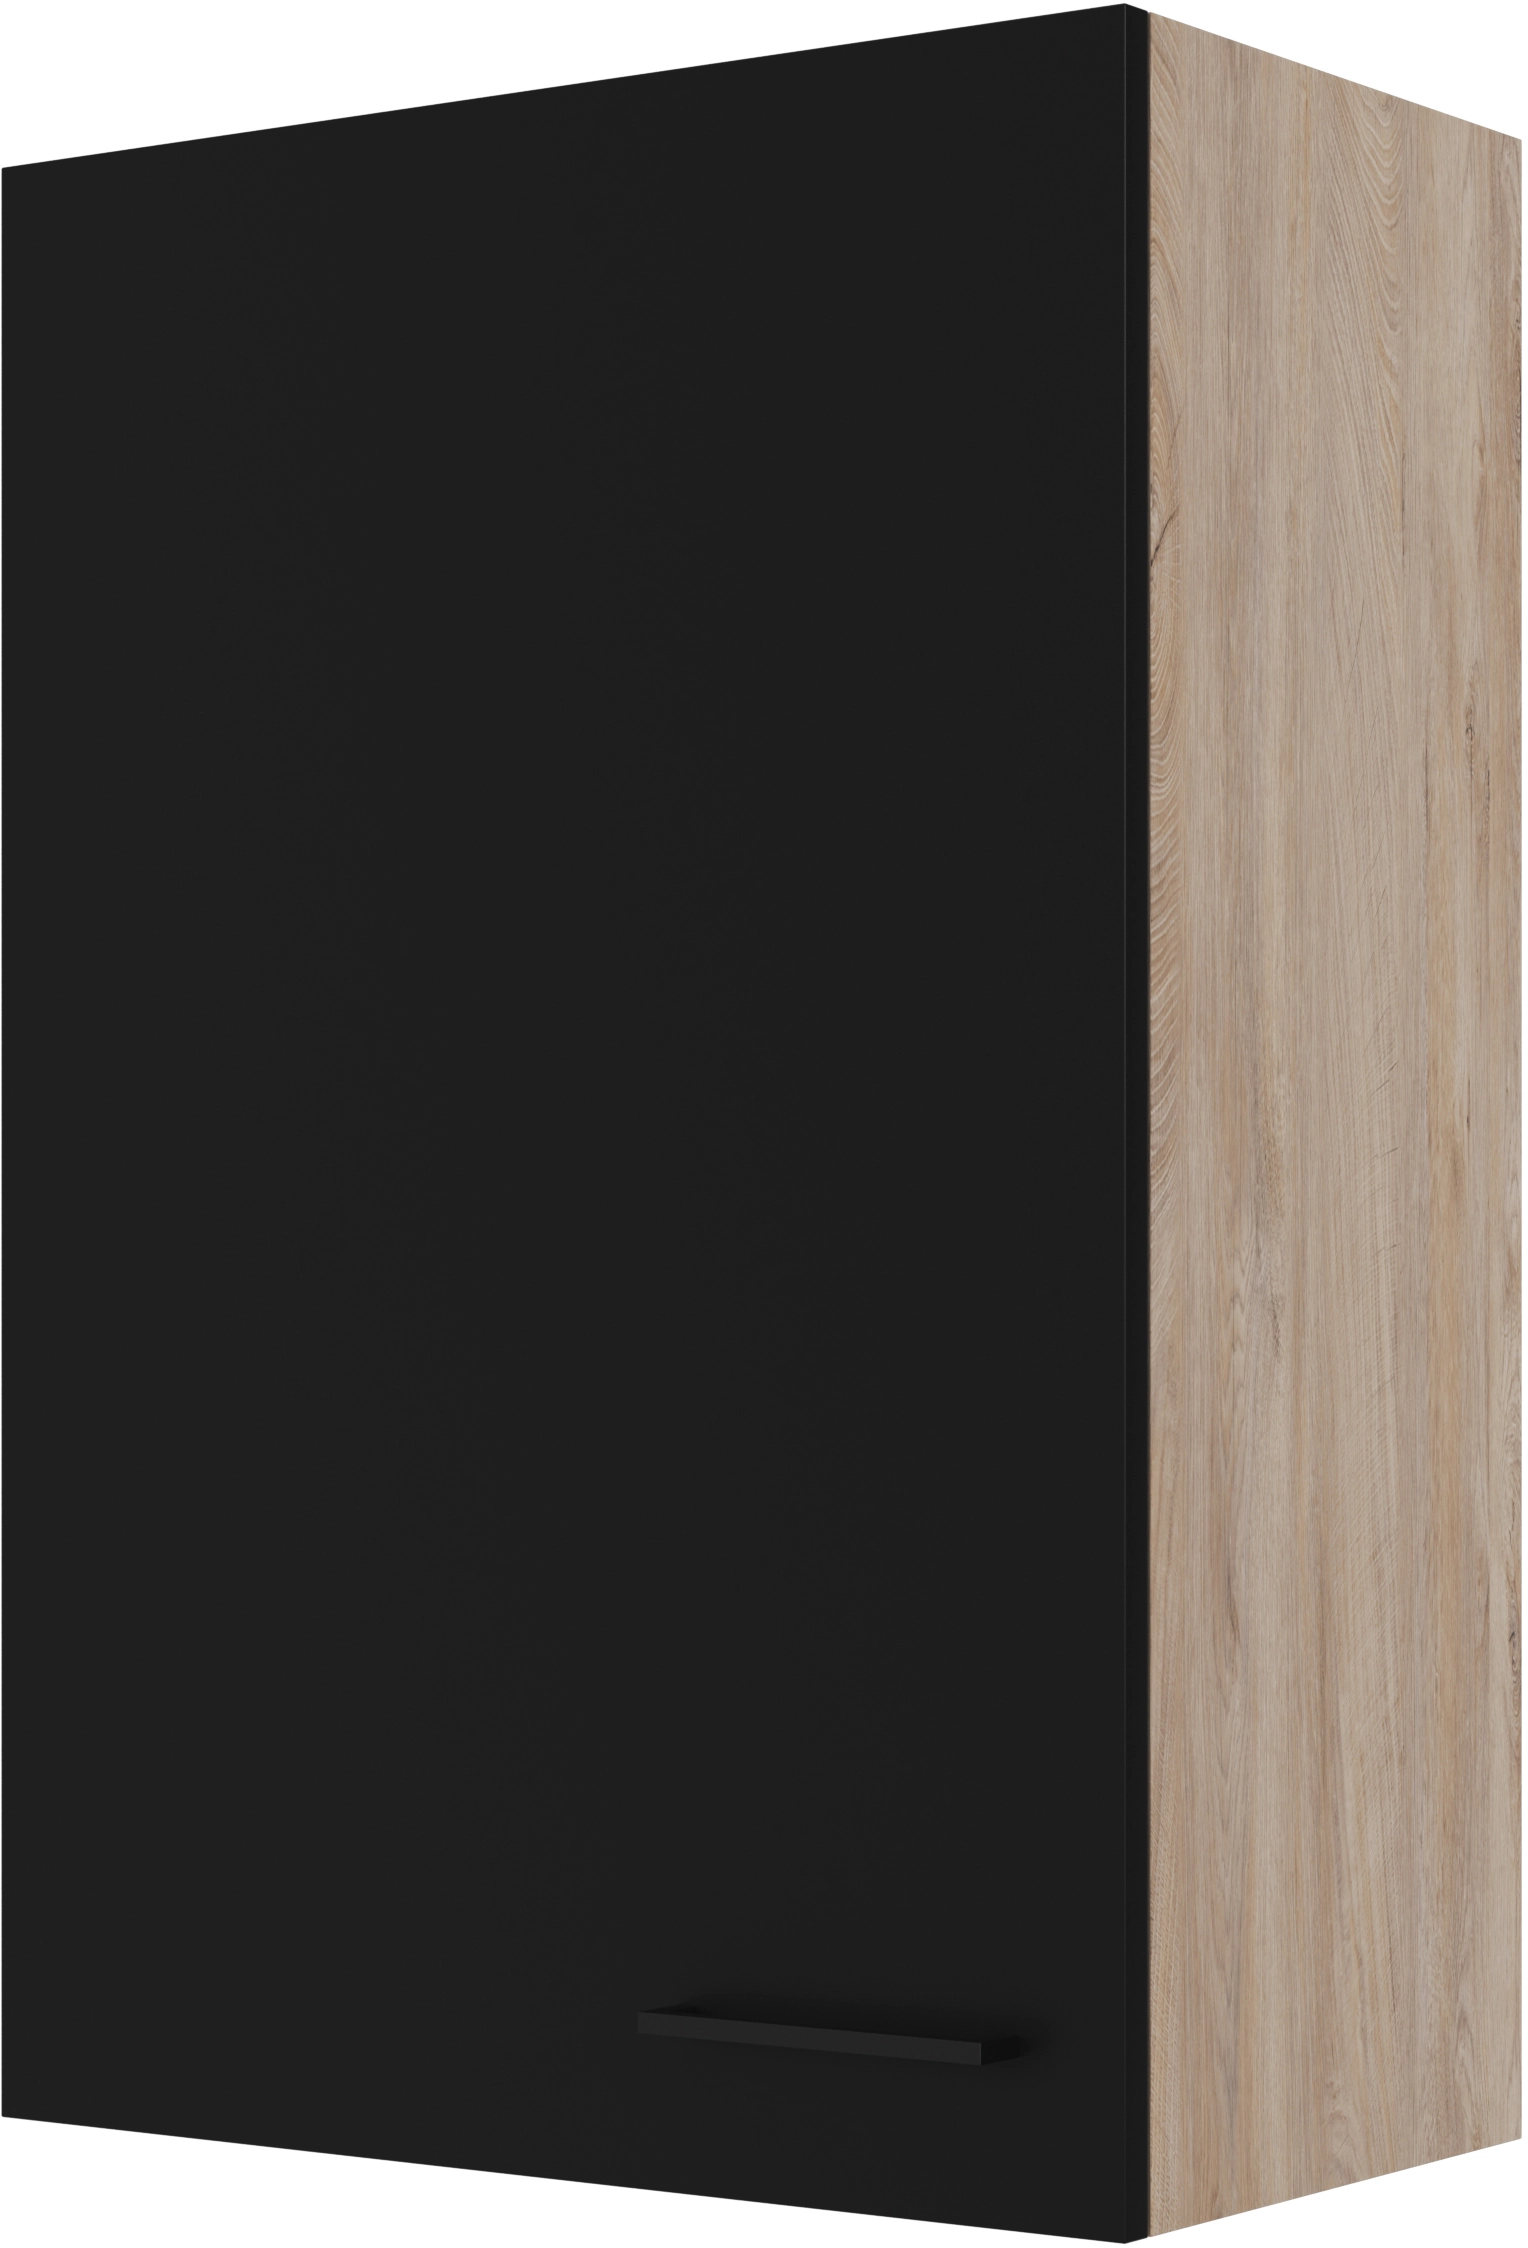 Flex-Well Exclusiv Oberschrank Capri 60 cm x 89 cm Schwarz Matt-Endgrain  Oak kaufen bei OBI